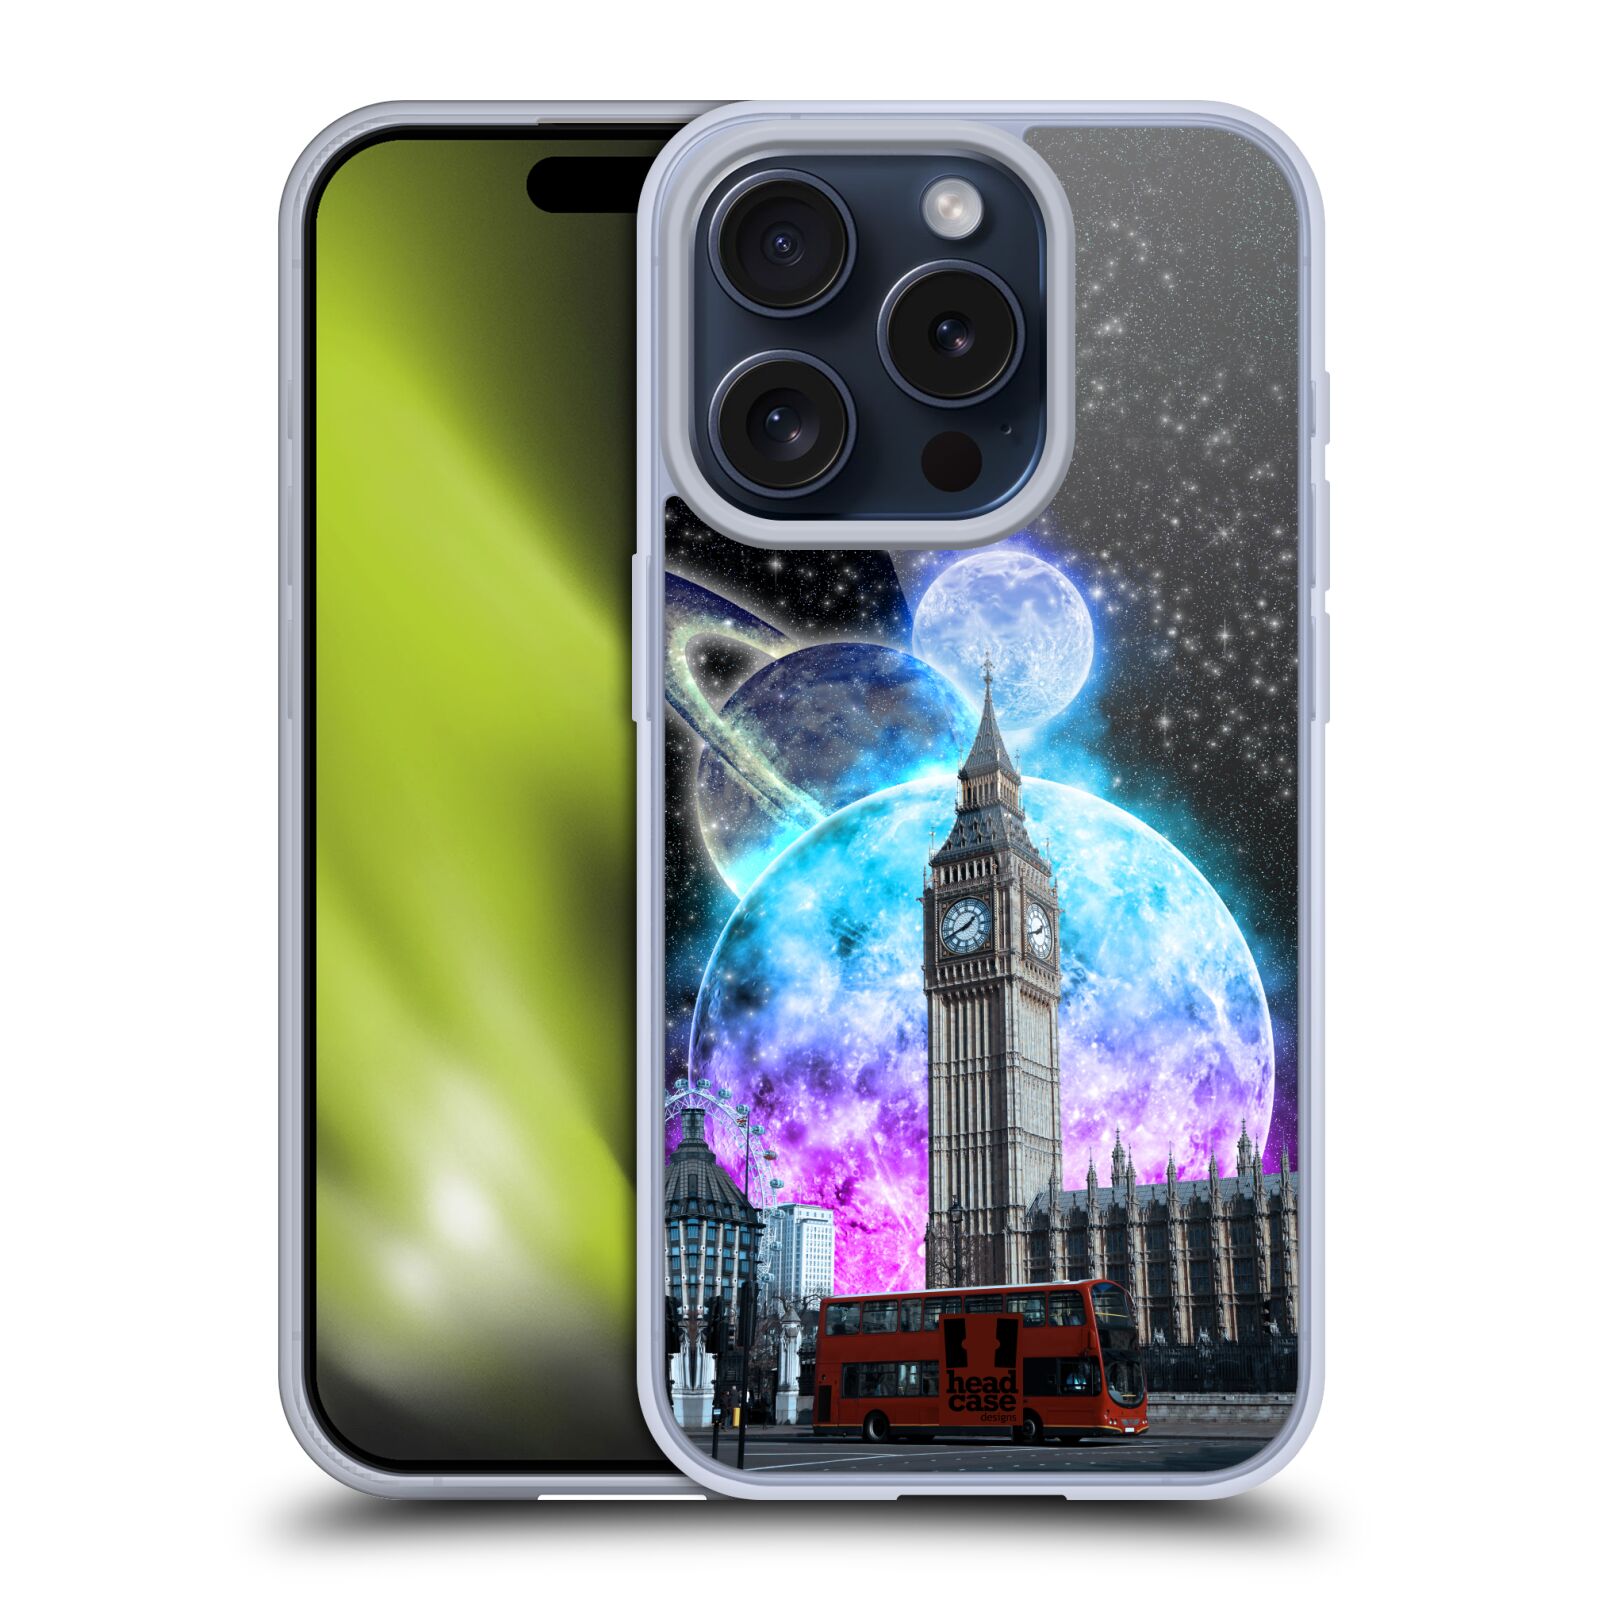 Silikonové lesklé pouzdro na mobil Apple iPhone 15 Pro - Head Case - Měsíční Londýn (Silikonový lesklý kryt, obal, pouzdro na mobilní telefon Apple iPhone 15 Pro s motivem Měsíční Londýn)